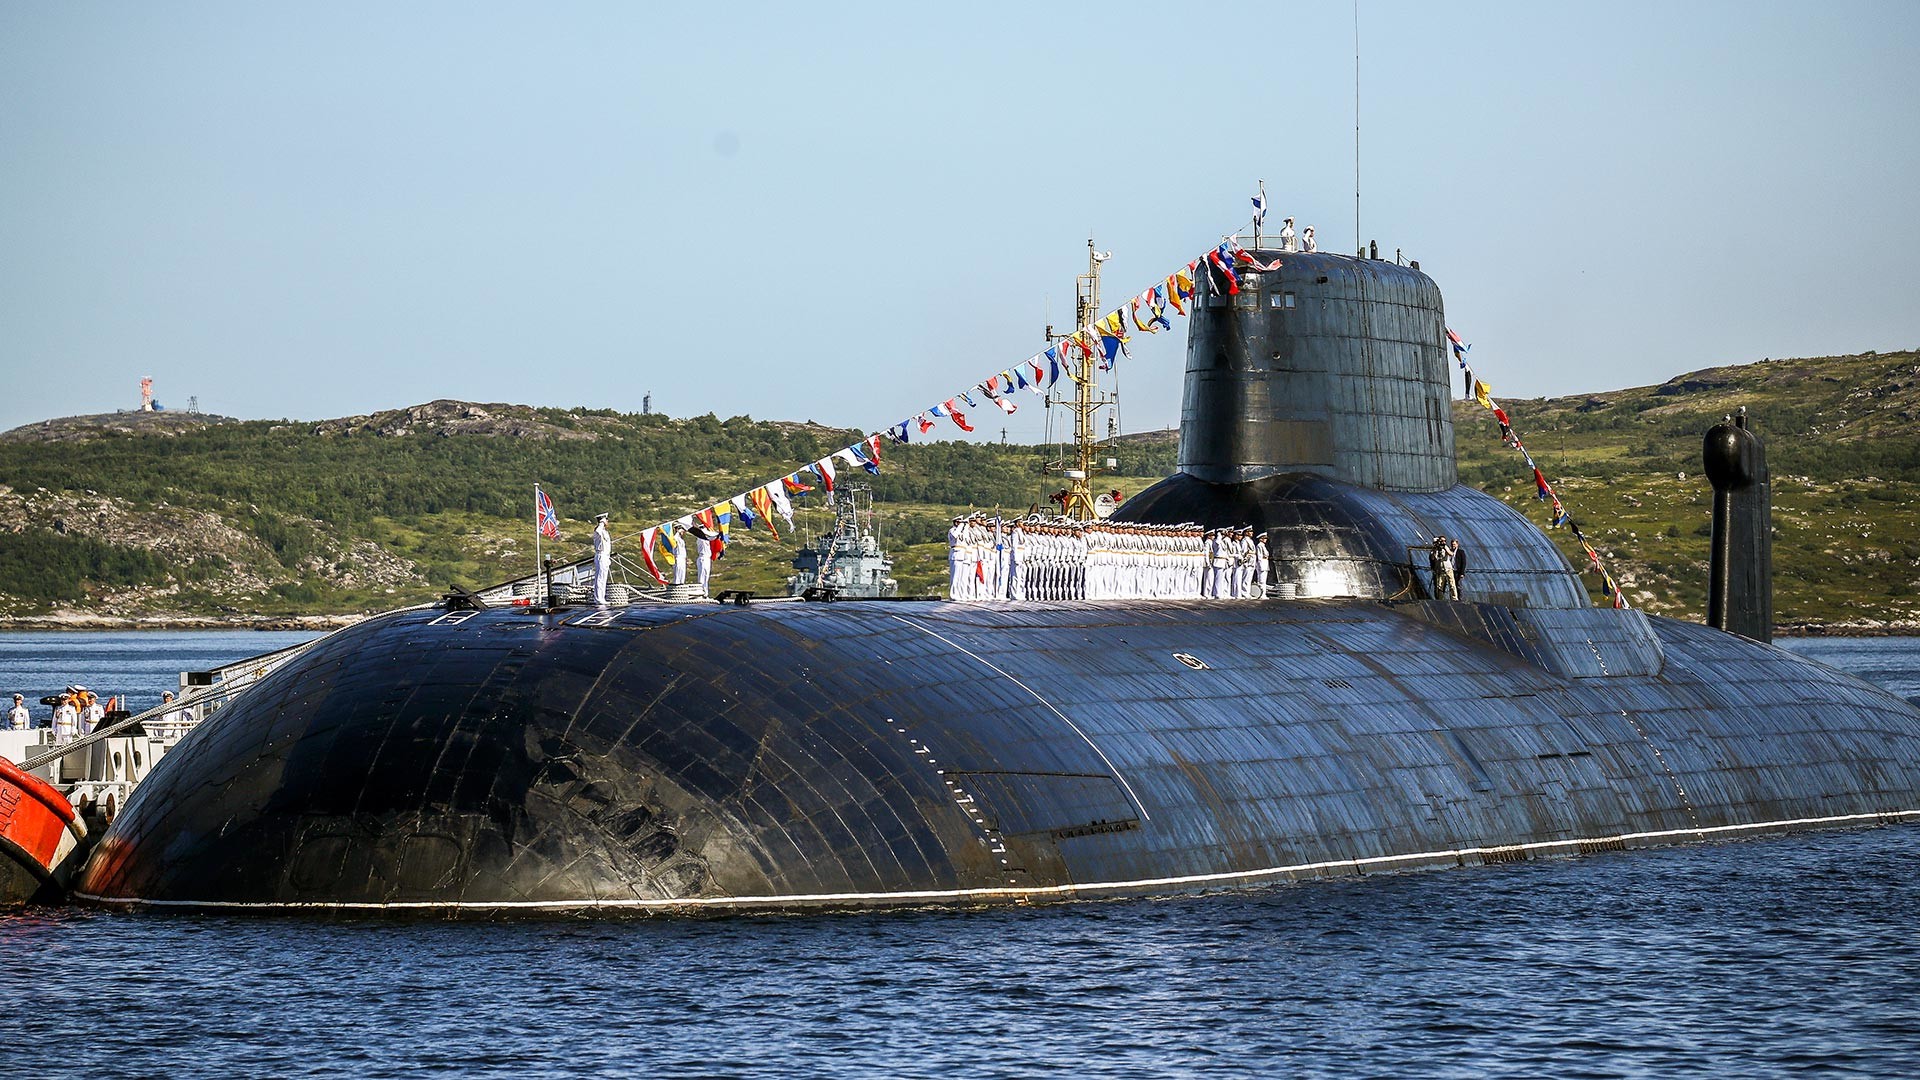 Jedrska podmornica projekta 941 Akula ТК-208 Dmitrij Donskoj